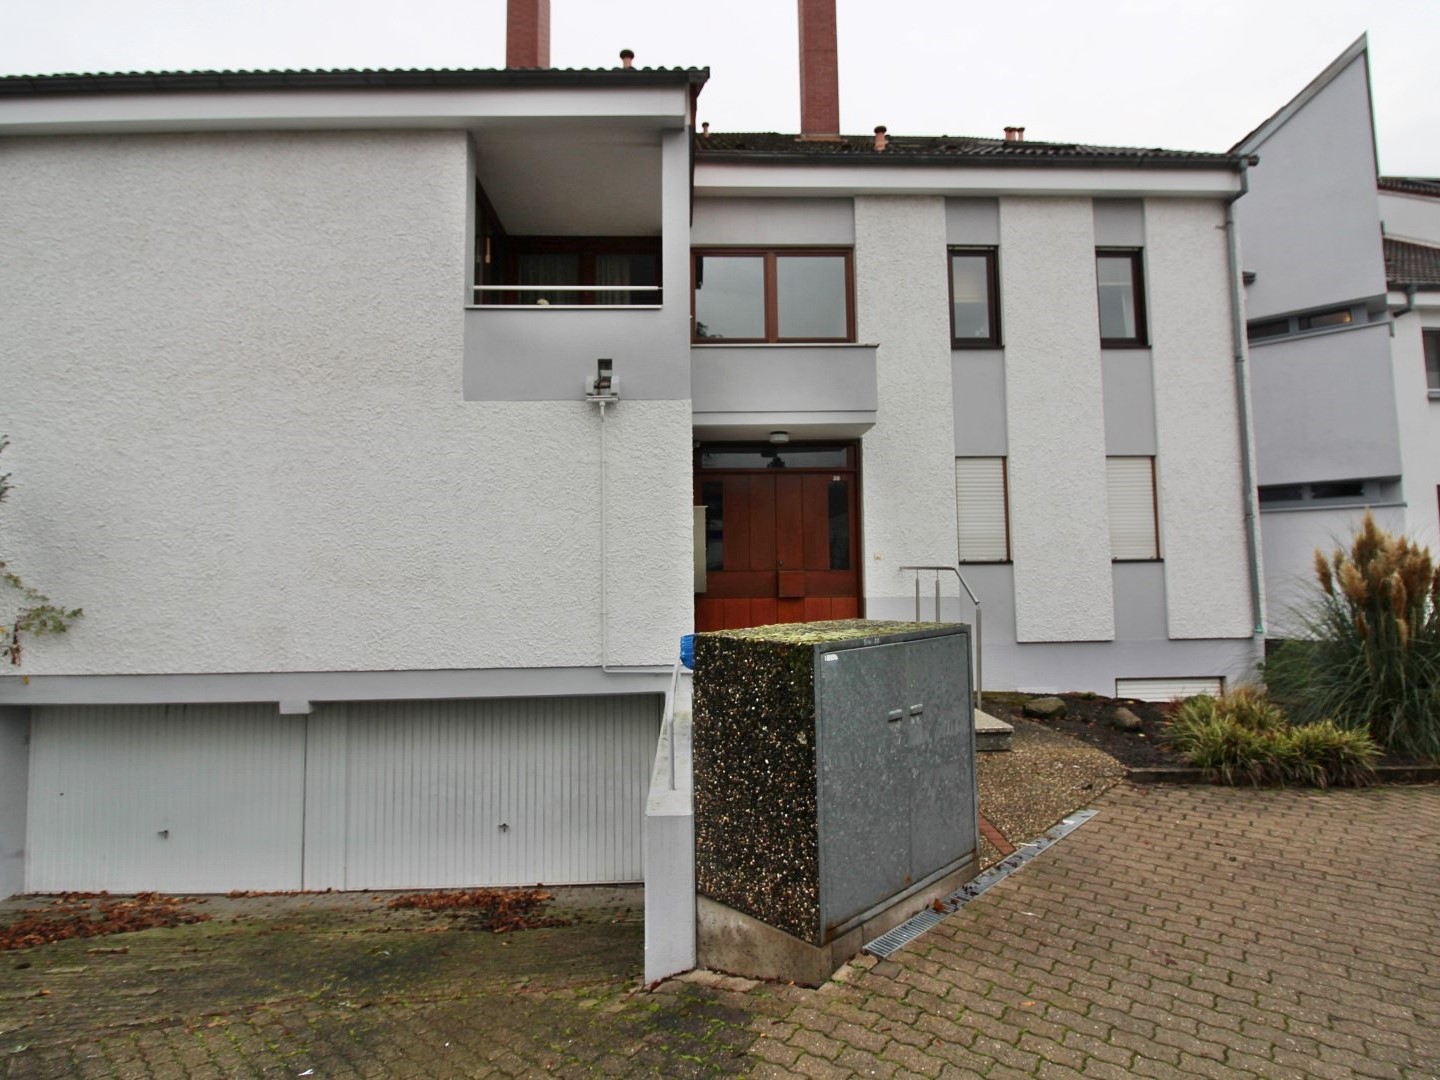 Objekt 986: Gepflegte 2-Zimmer Erdgeschosswohnung in ruhigem Wohngebiet in Worms Hochheim